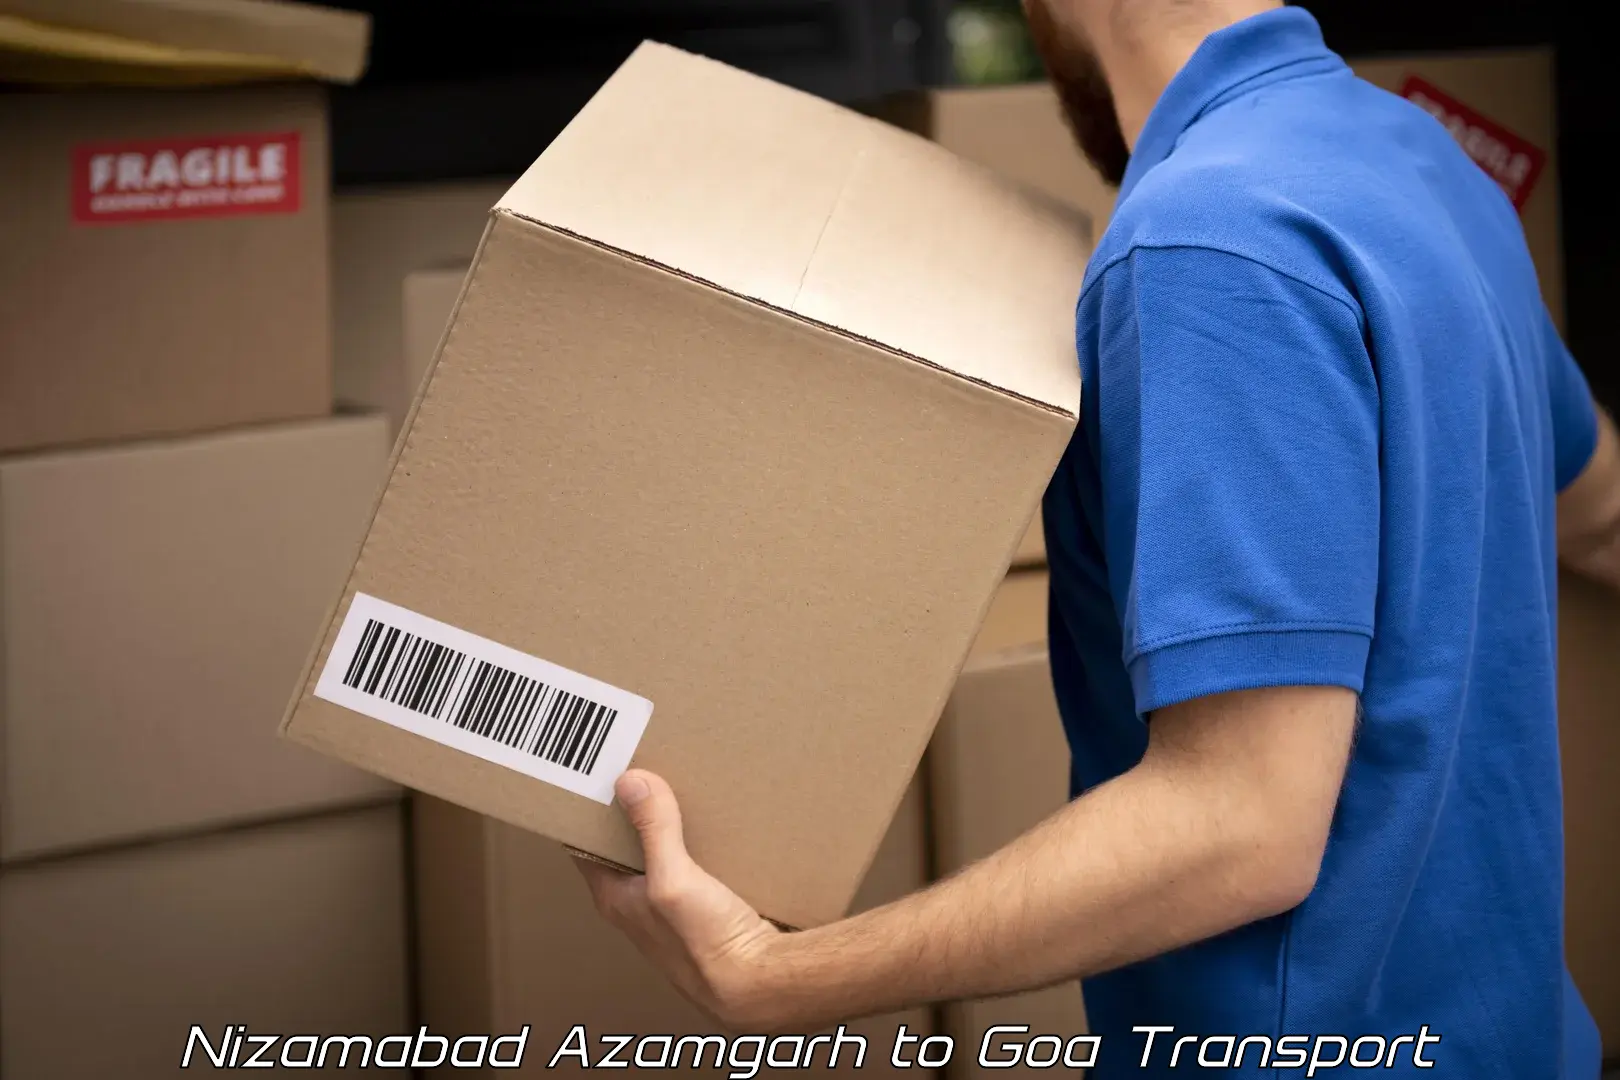 Commercial transport service Nizamabad Azamgarh to Margao